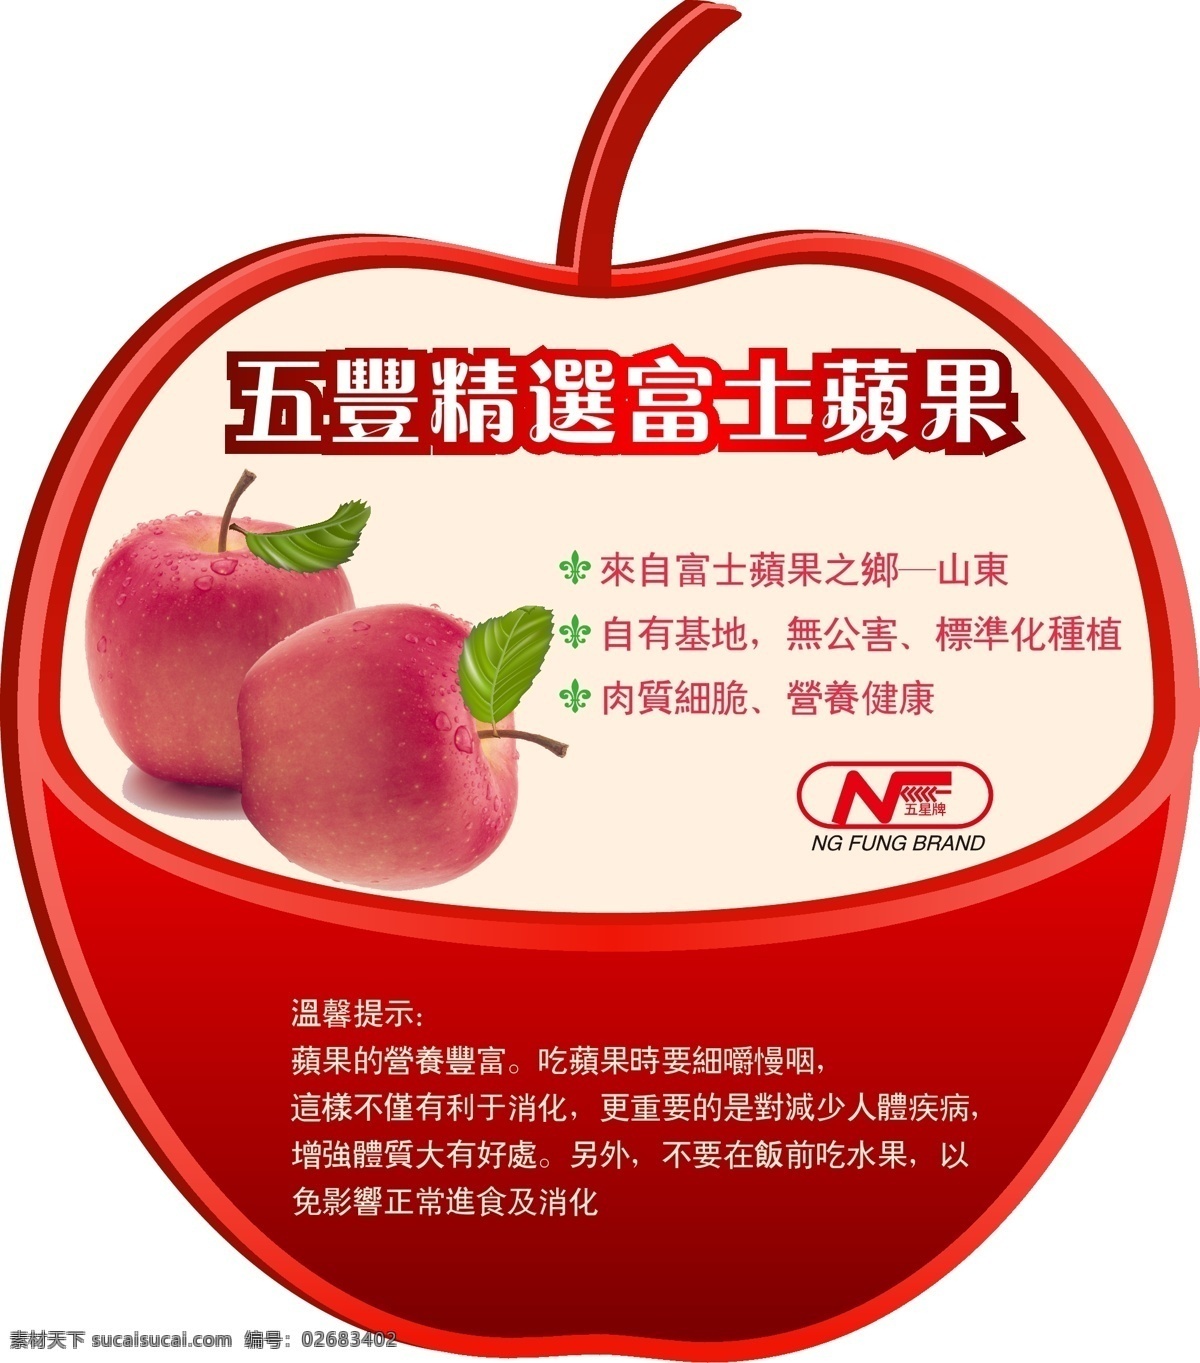 富士 苹果 超市 吊牌 红色 精美 水果 形状 矢量 模板下载 富士苹果